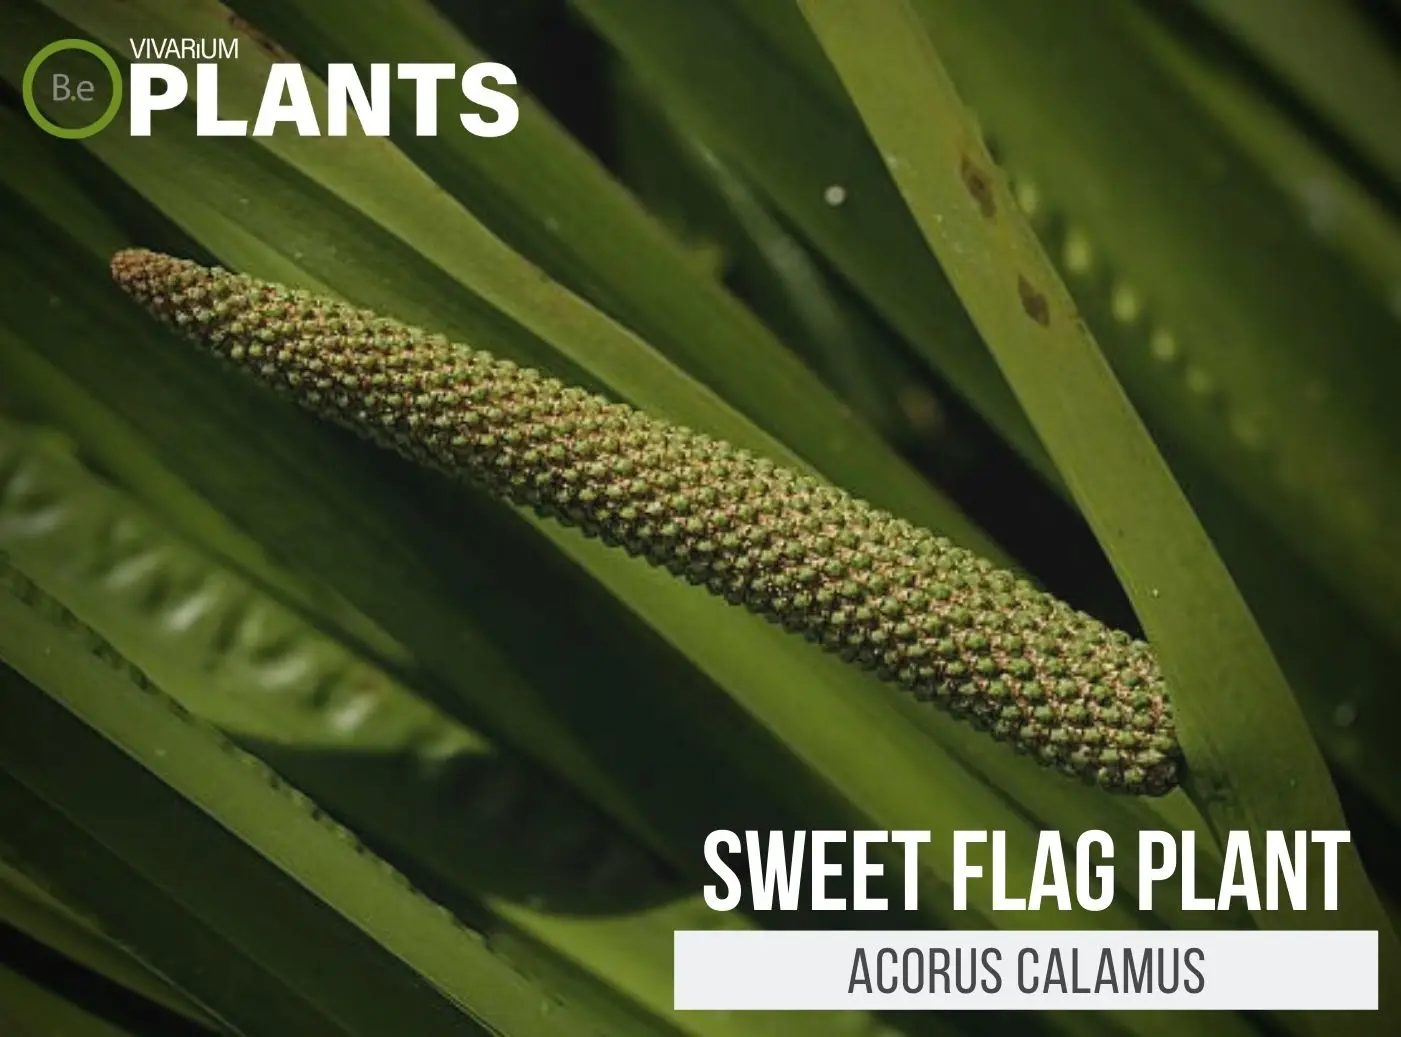 Acorus calamus "Sweet Flag" Plant Care Guide